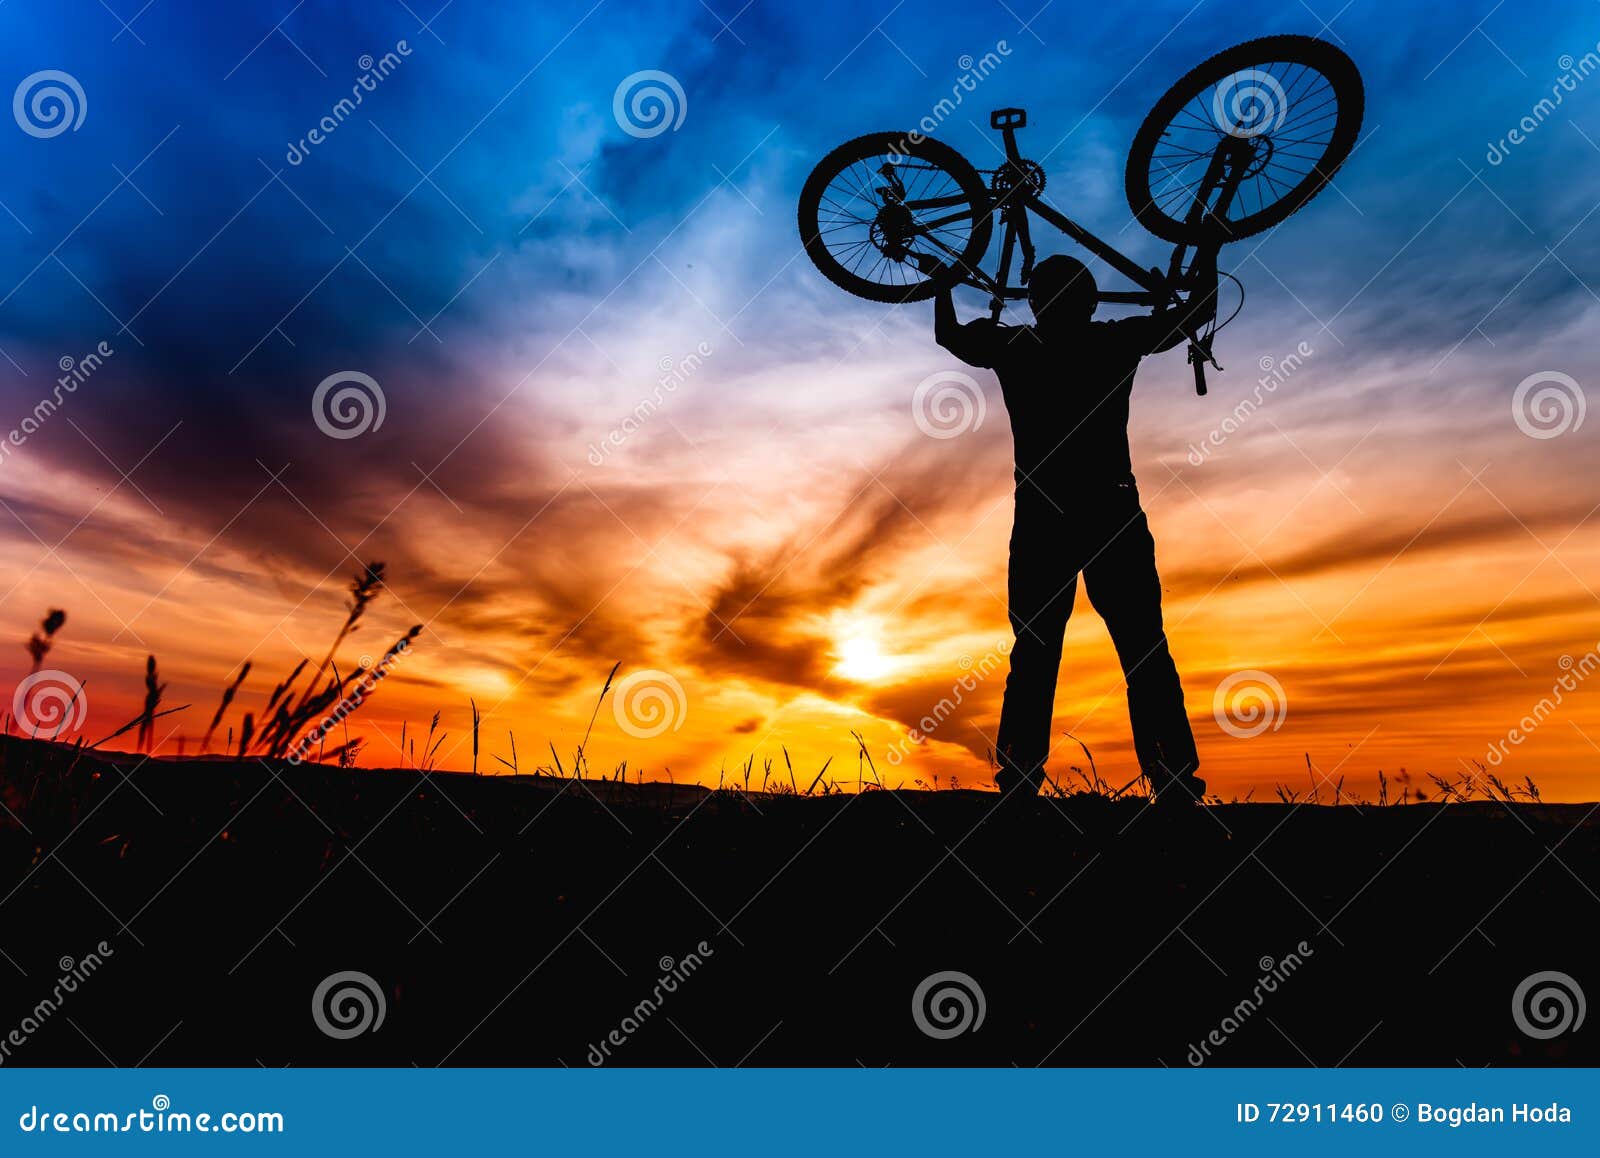 Впереди нас ехали спортсмены. Силуэт велосипедист в горах. Огромное солнце и человек велосипедист. Незнакомец с велосипедом. Велосипедист в шлеме на горе.